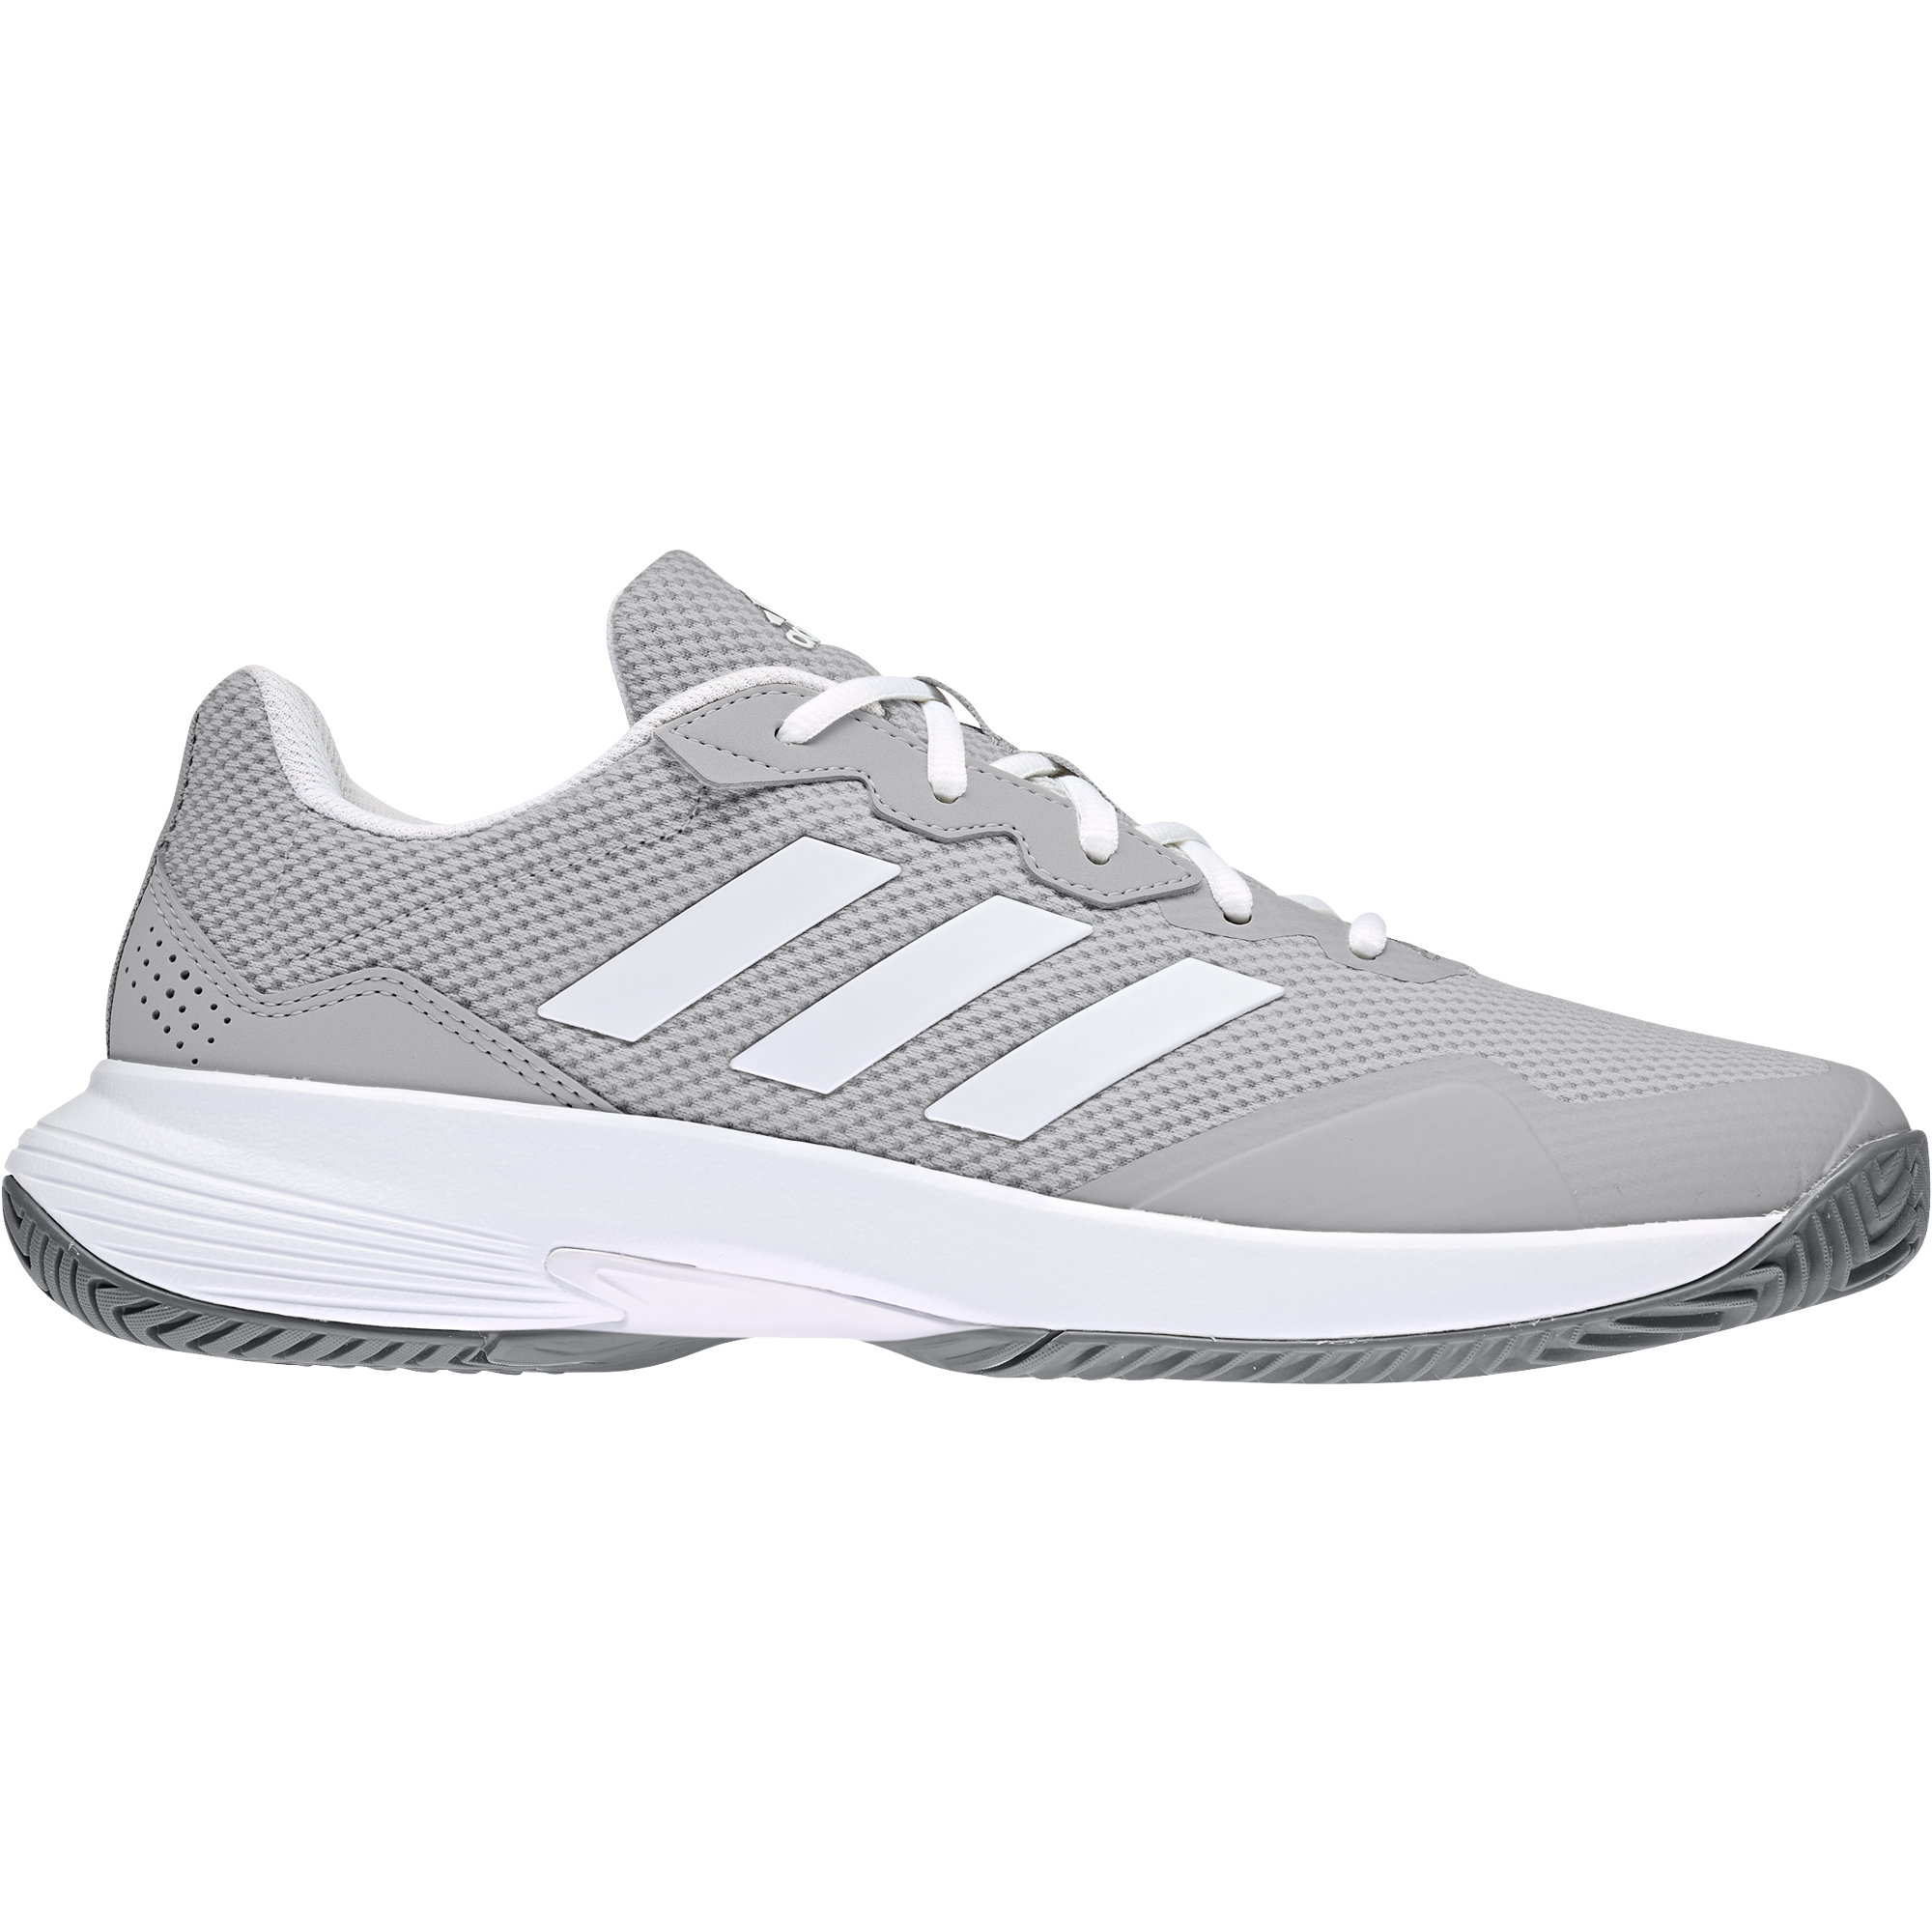 Adidas Men's GameCourt 2 Tennis Shoes, Size 12, White/Black